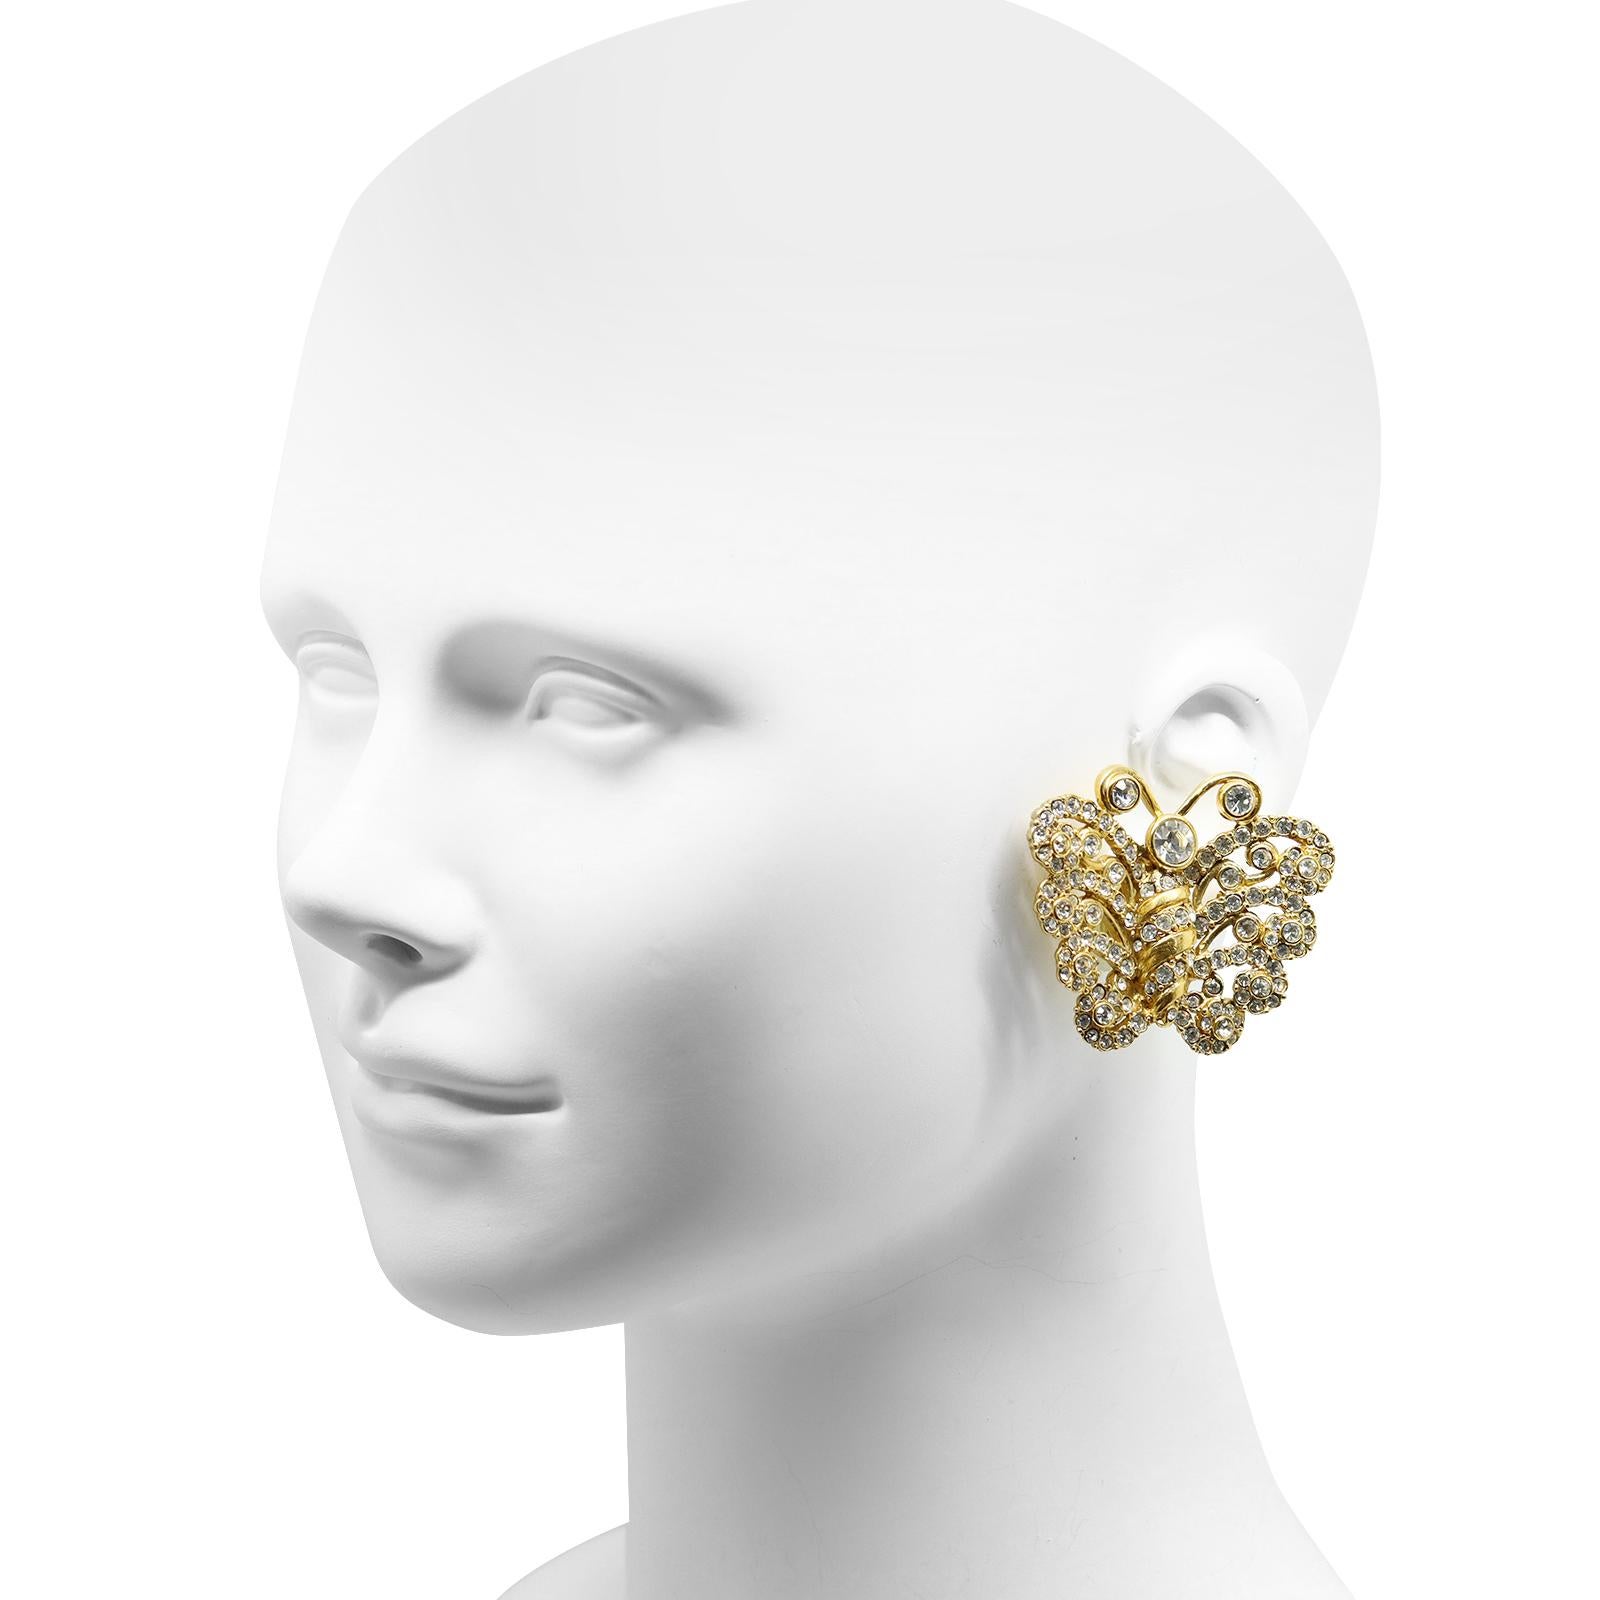 dior butterfly earrings